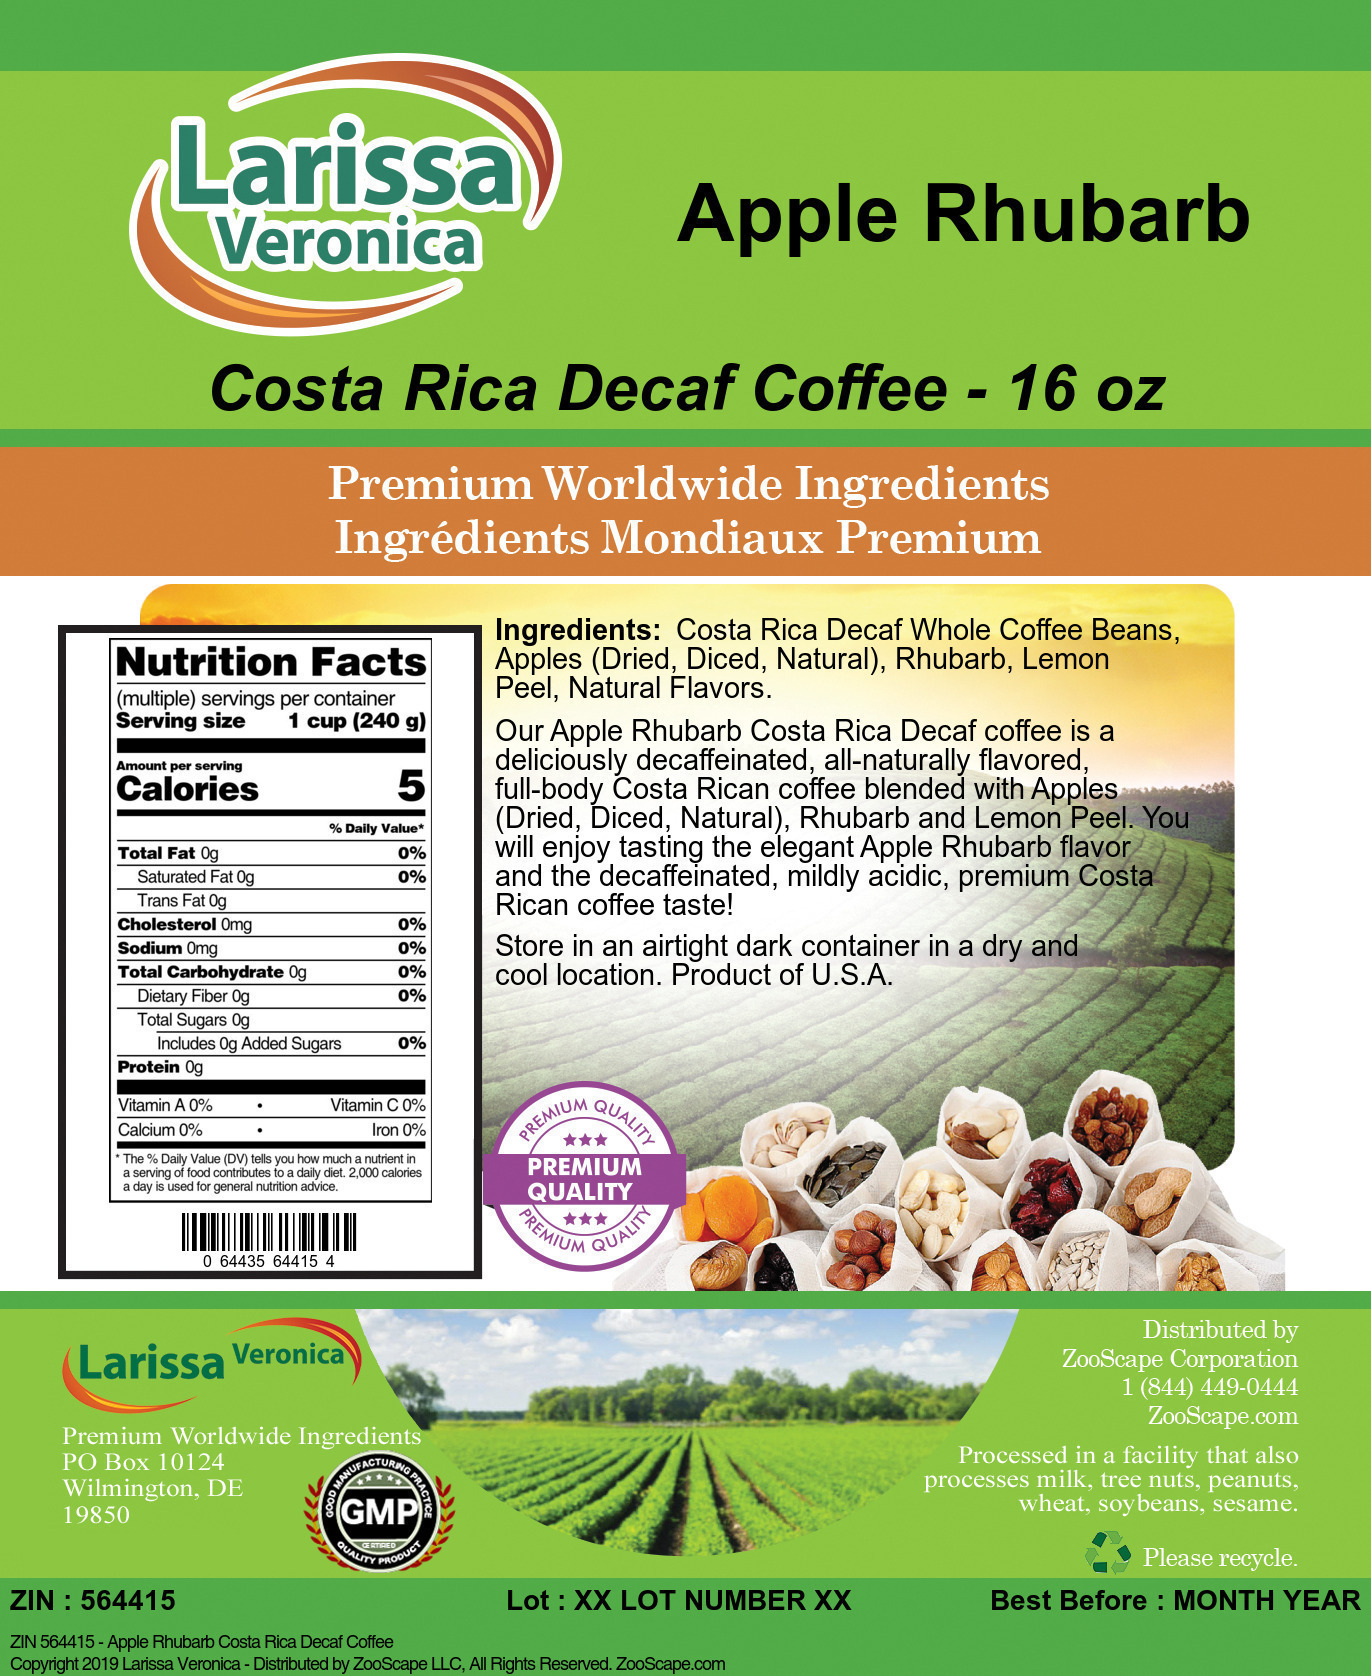 Apple Rhubarb Costa Rica Decaf Coffee - Label